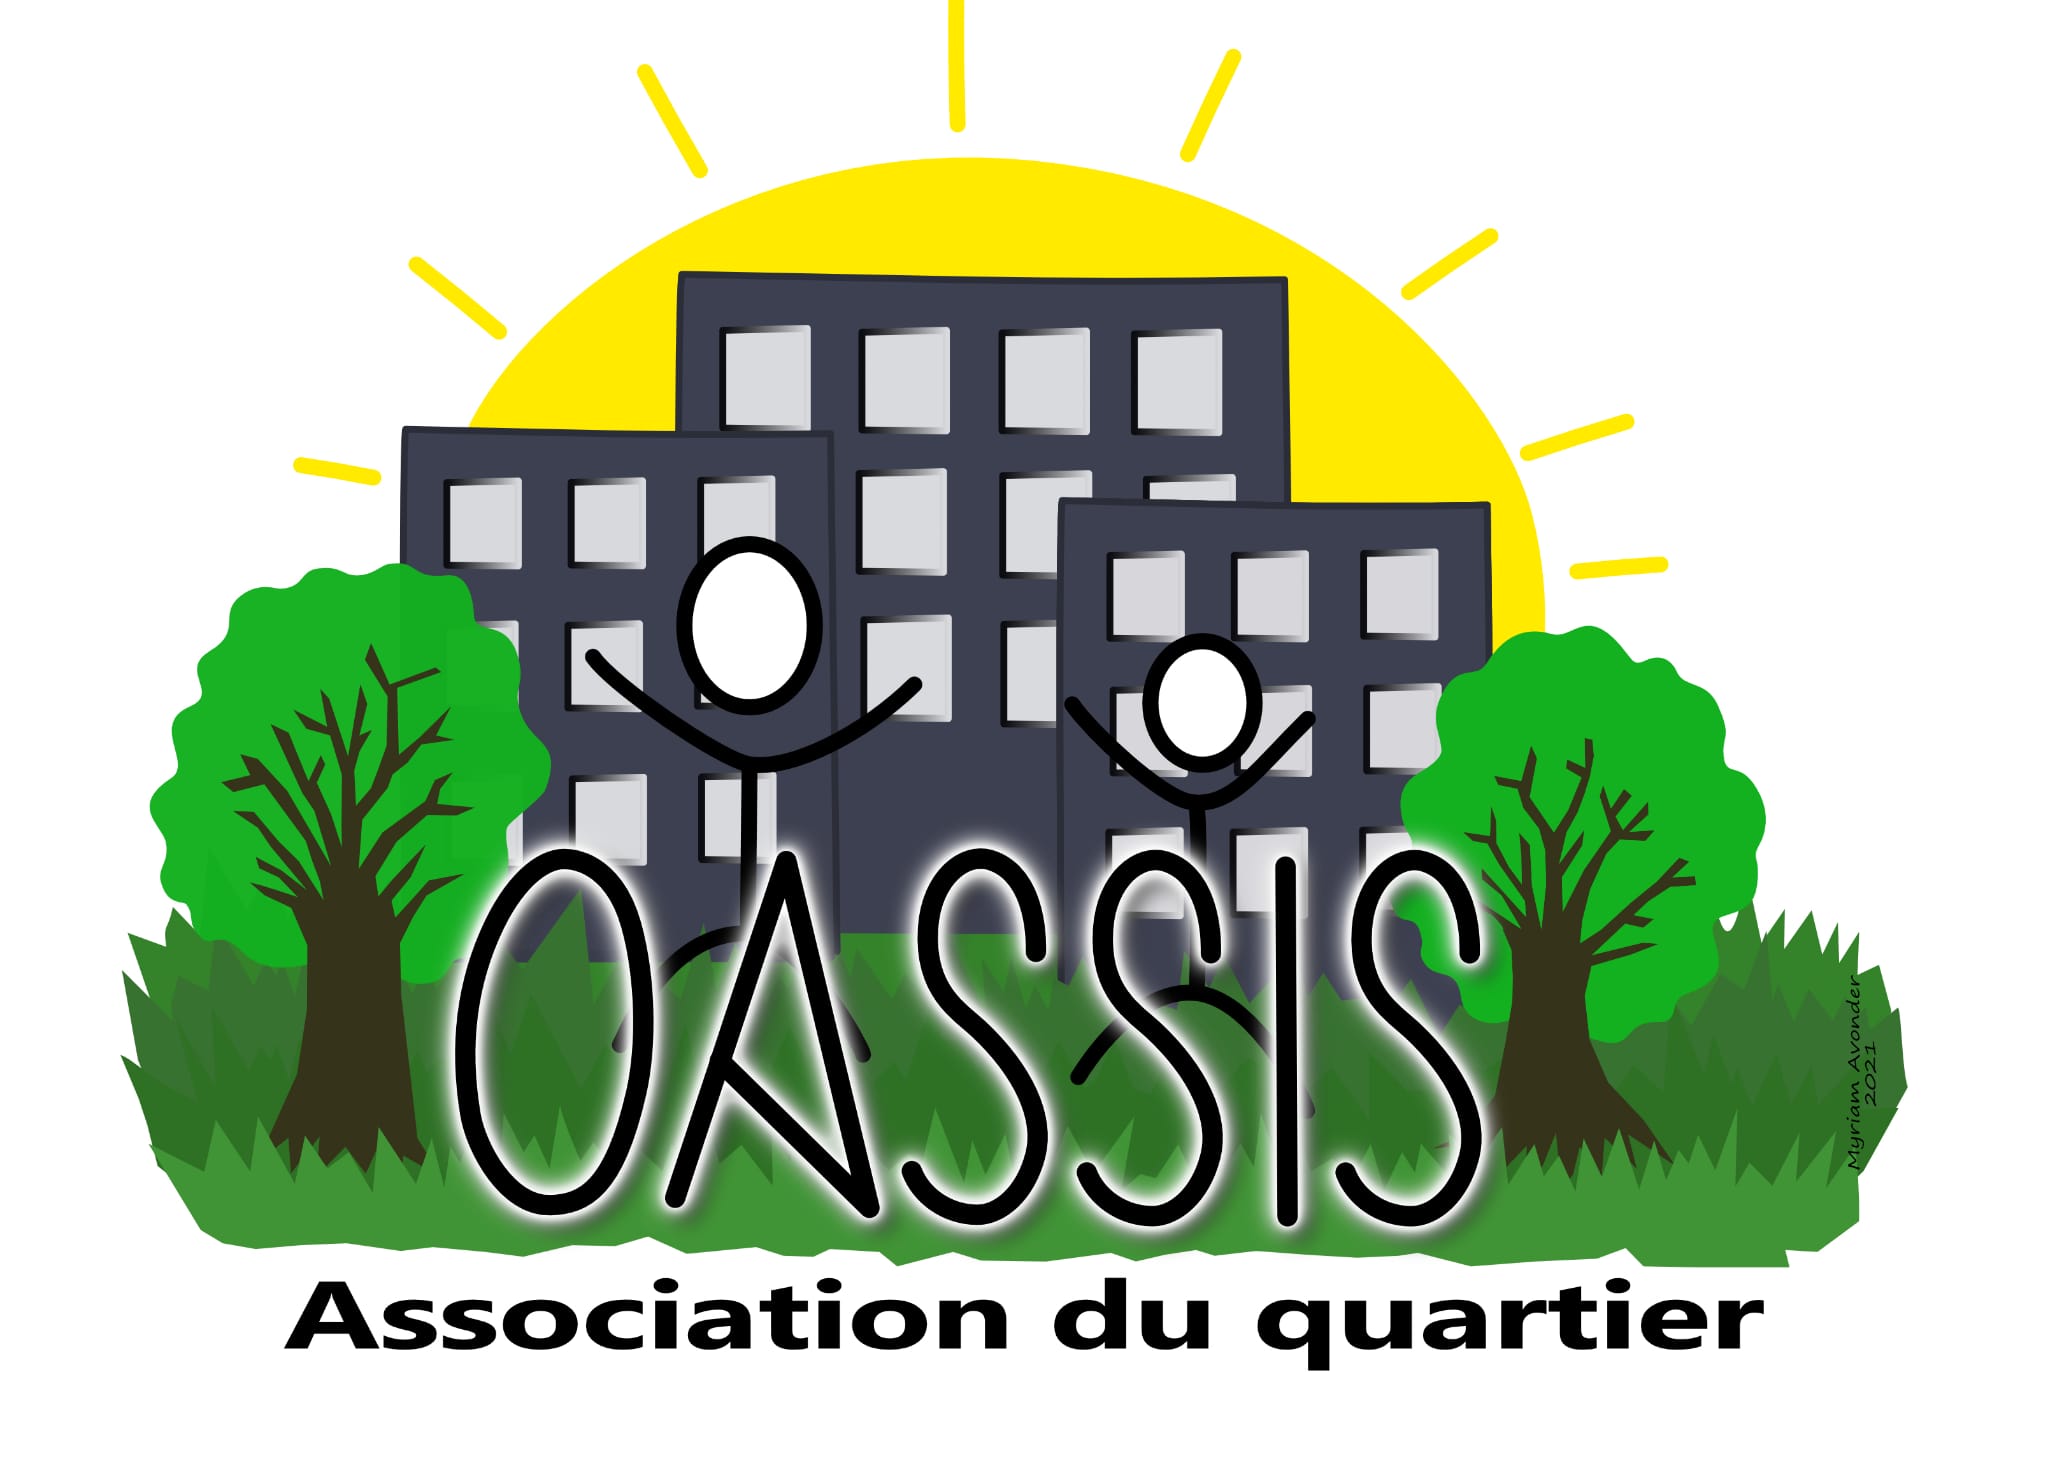 Association du quartier OASSIS